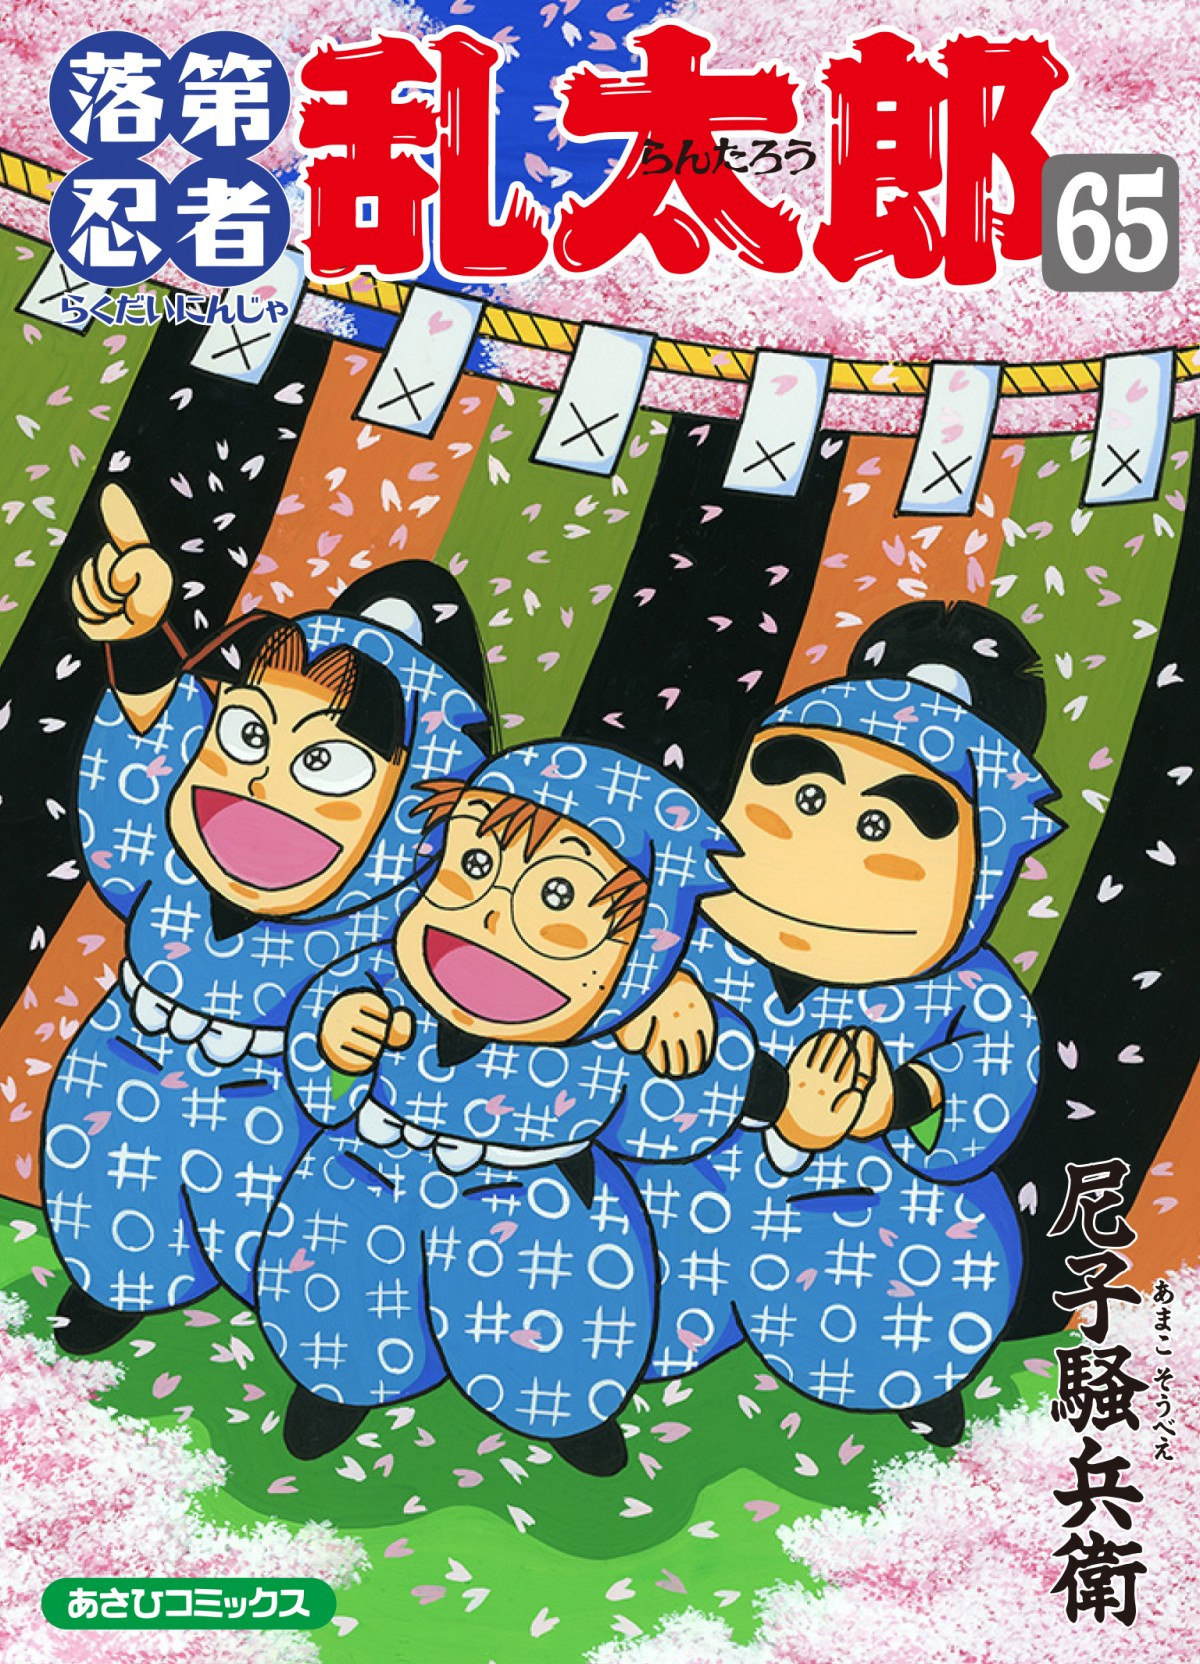 アニメ 忍たま 原作漫画 落第忍者乱太郎 完結 33年の歴史に幕も来年4月から新連載 Oricon News